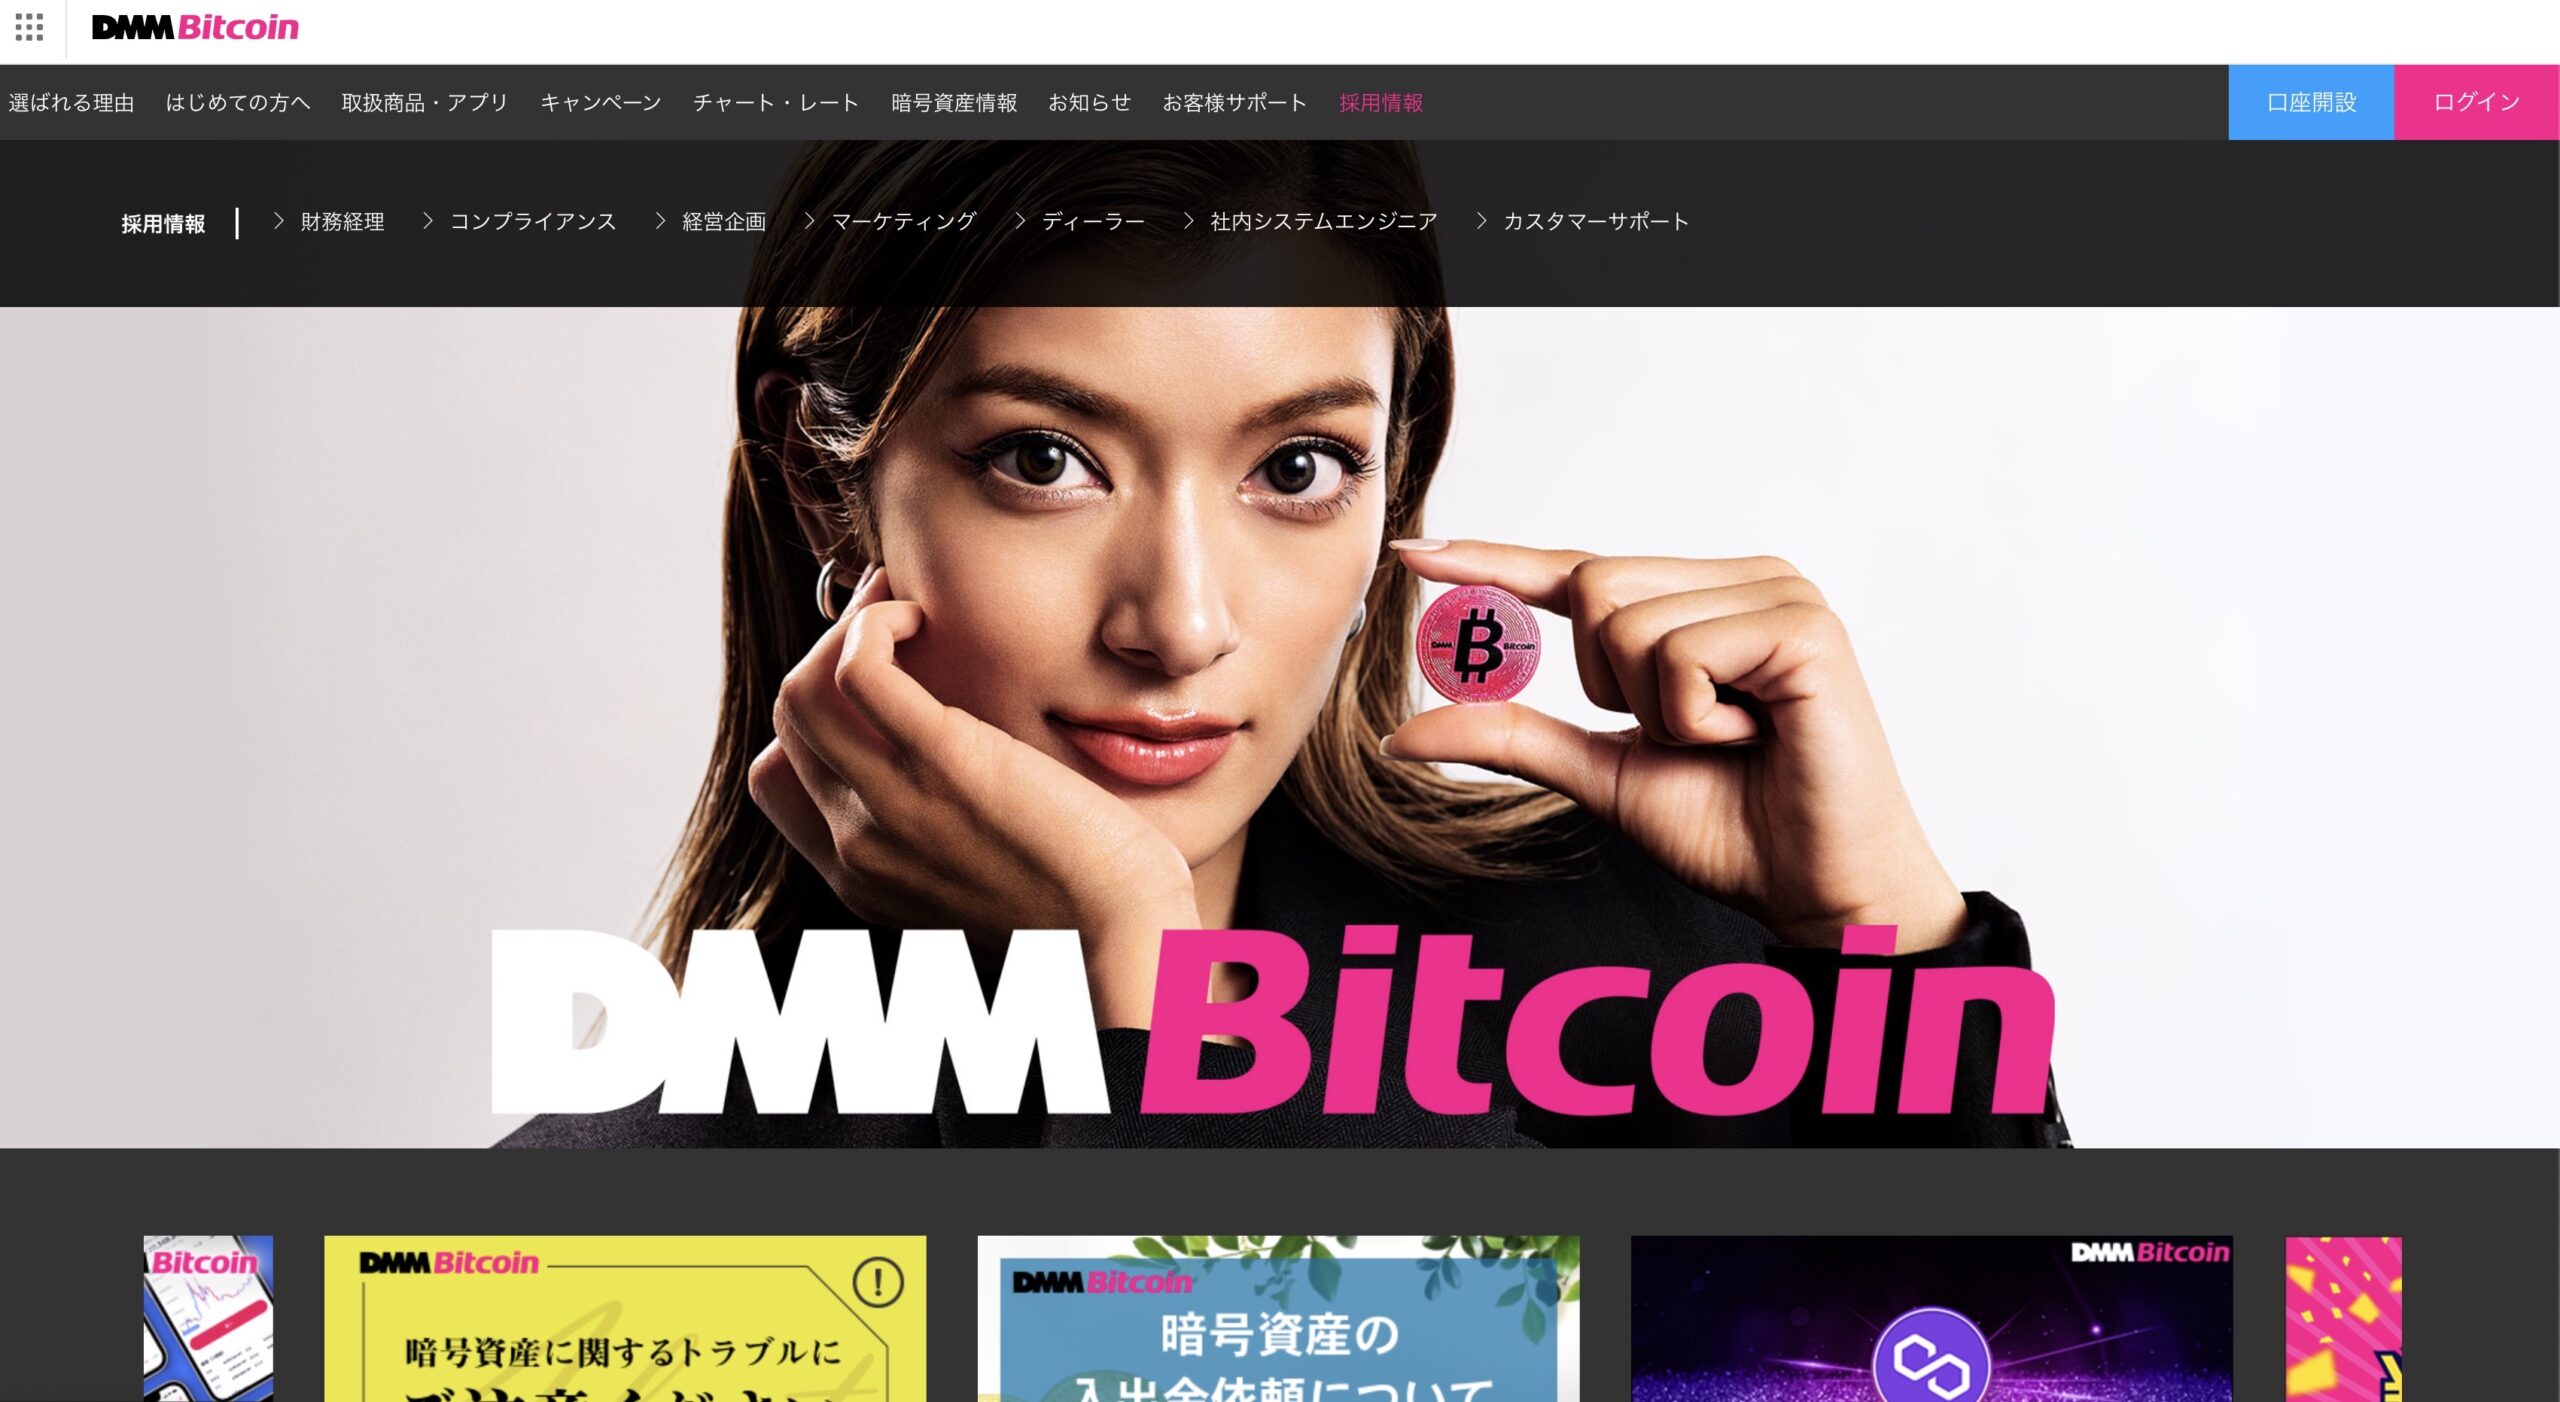 dmmビットコイン公式サイト